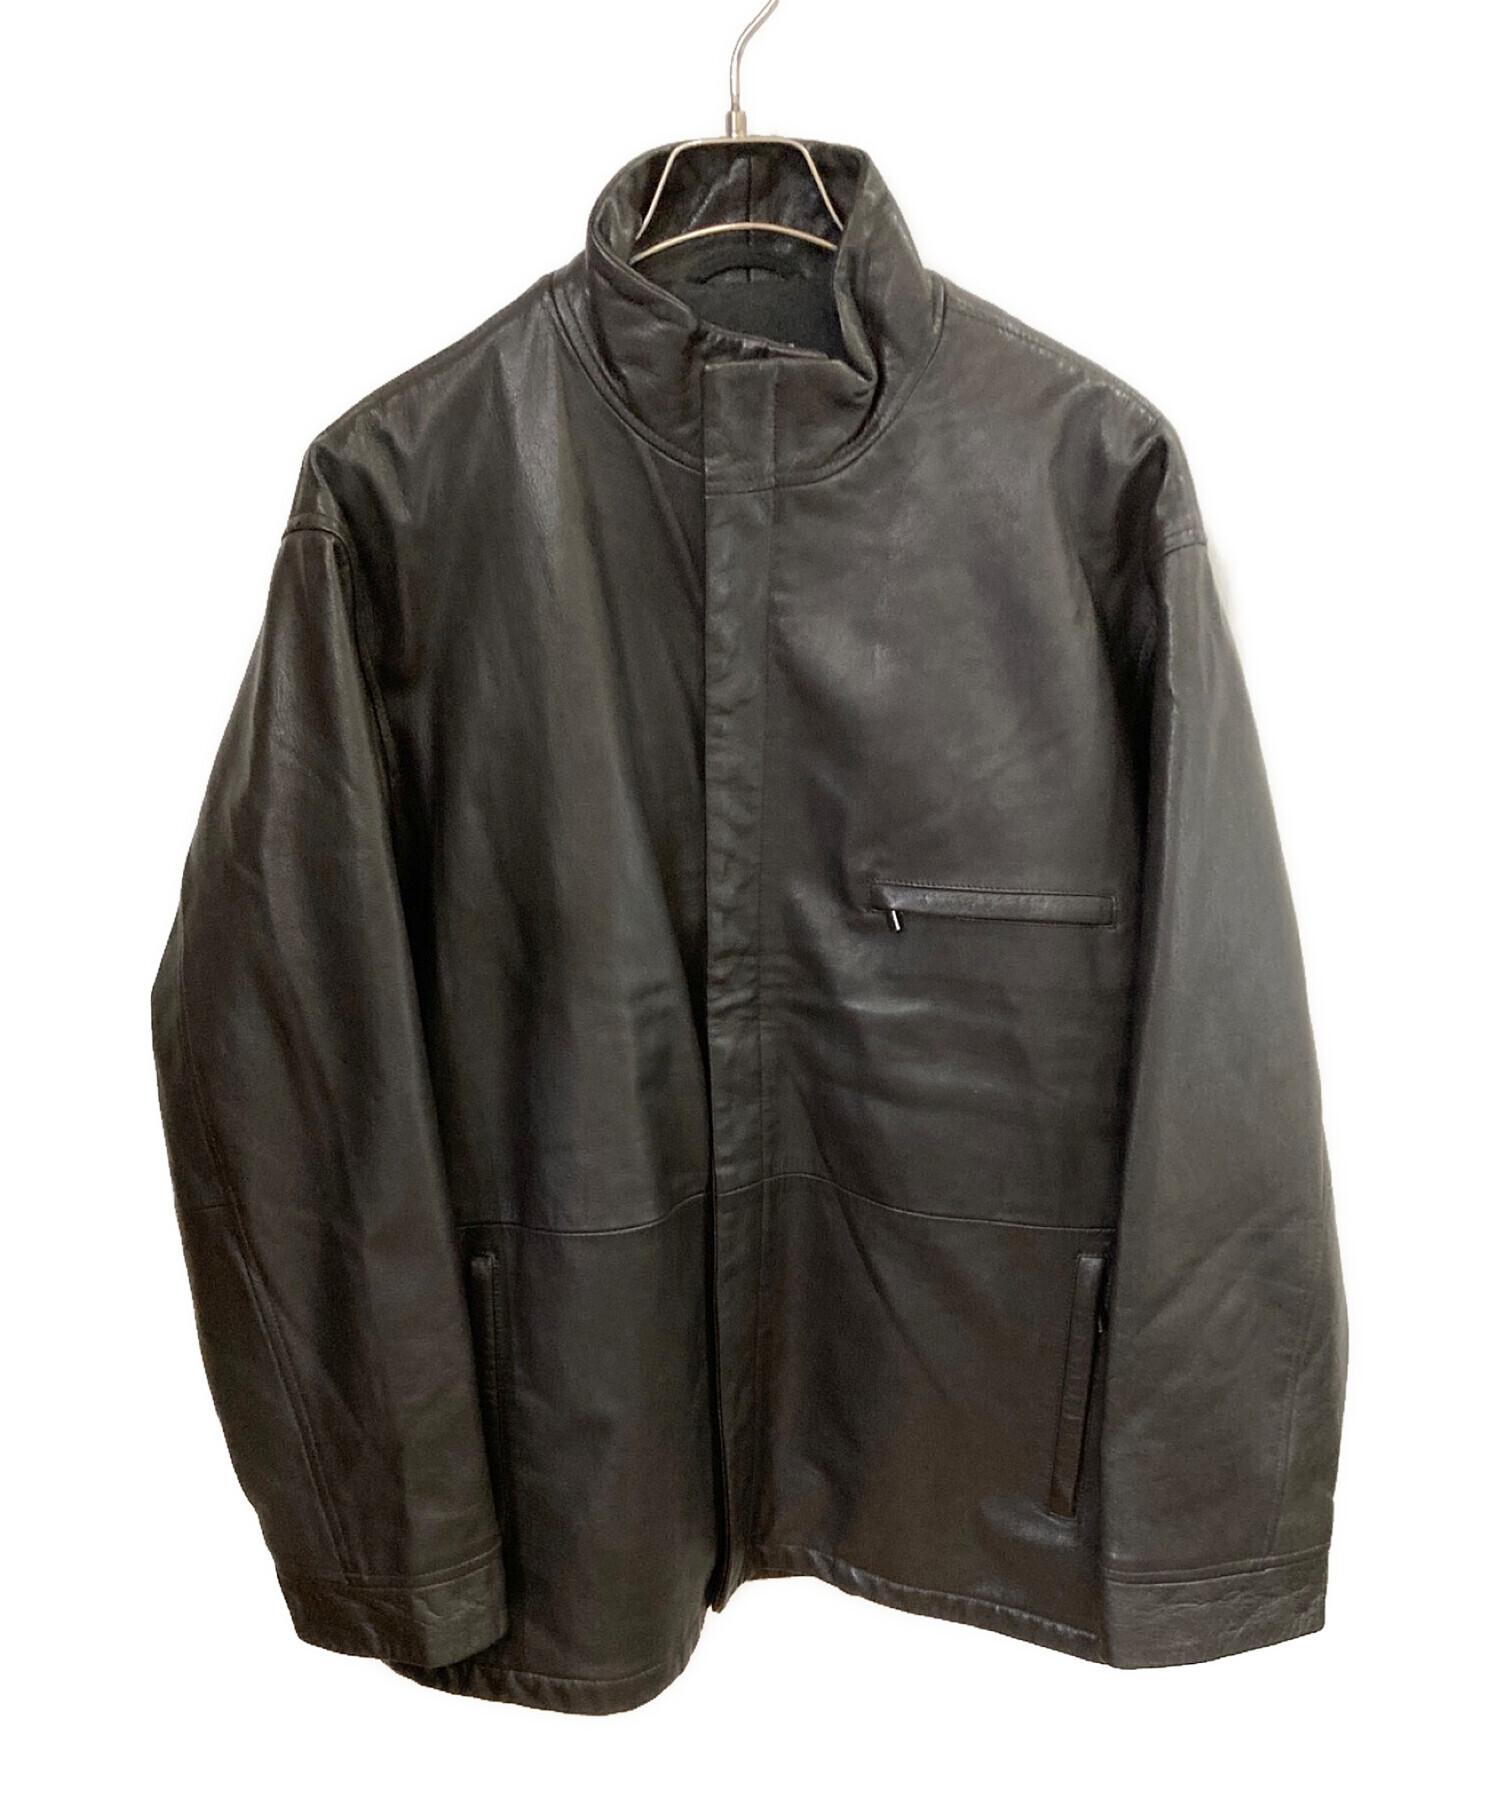 ARMANI COLLEZIONI (アルマーニ コレツィオーニ) ゴートレザージャケット ブラック サイズ:46